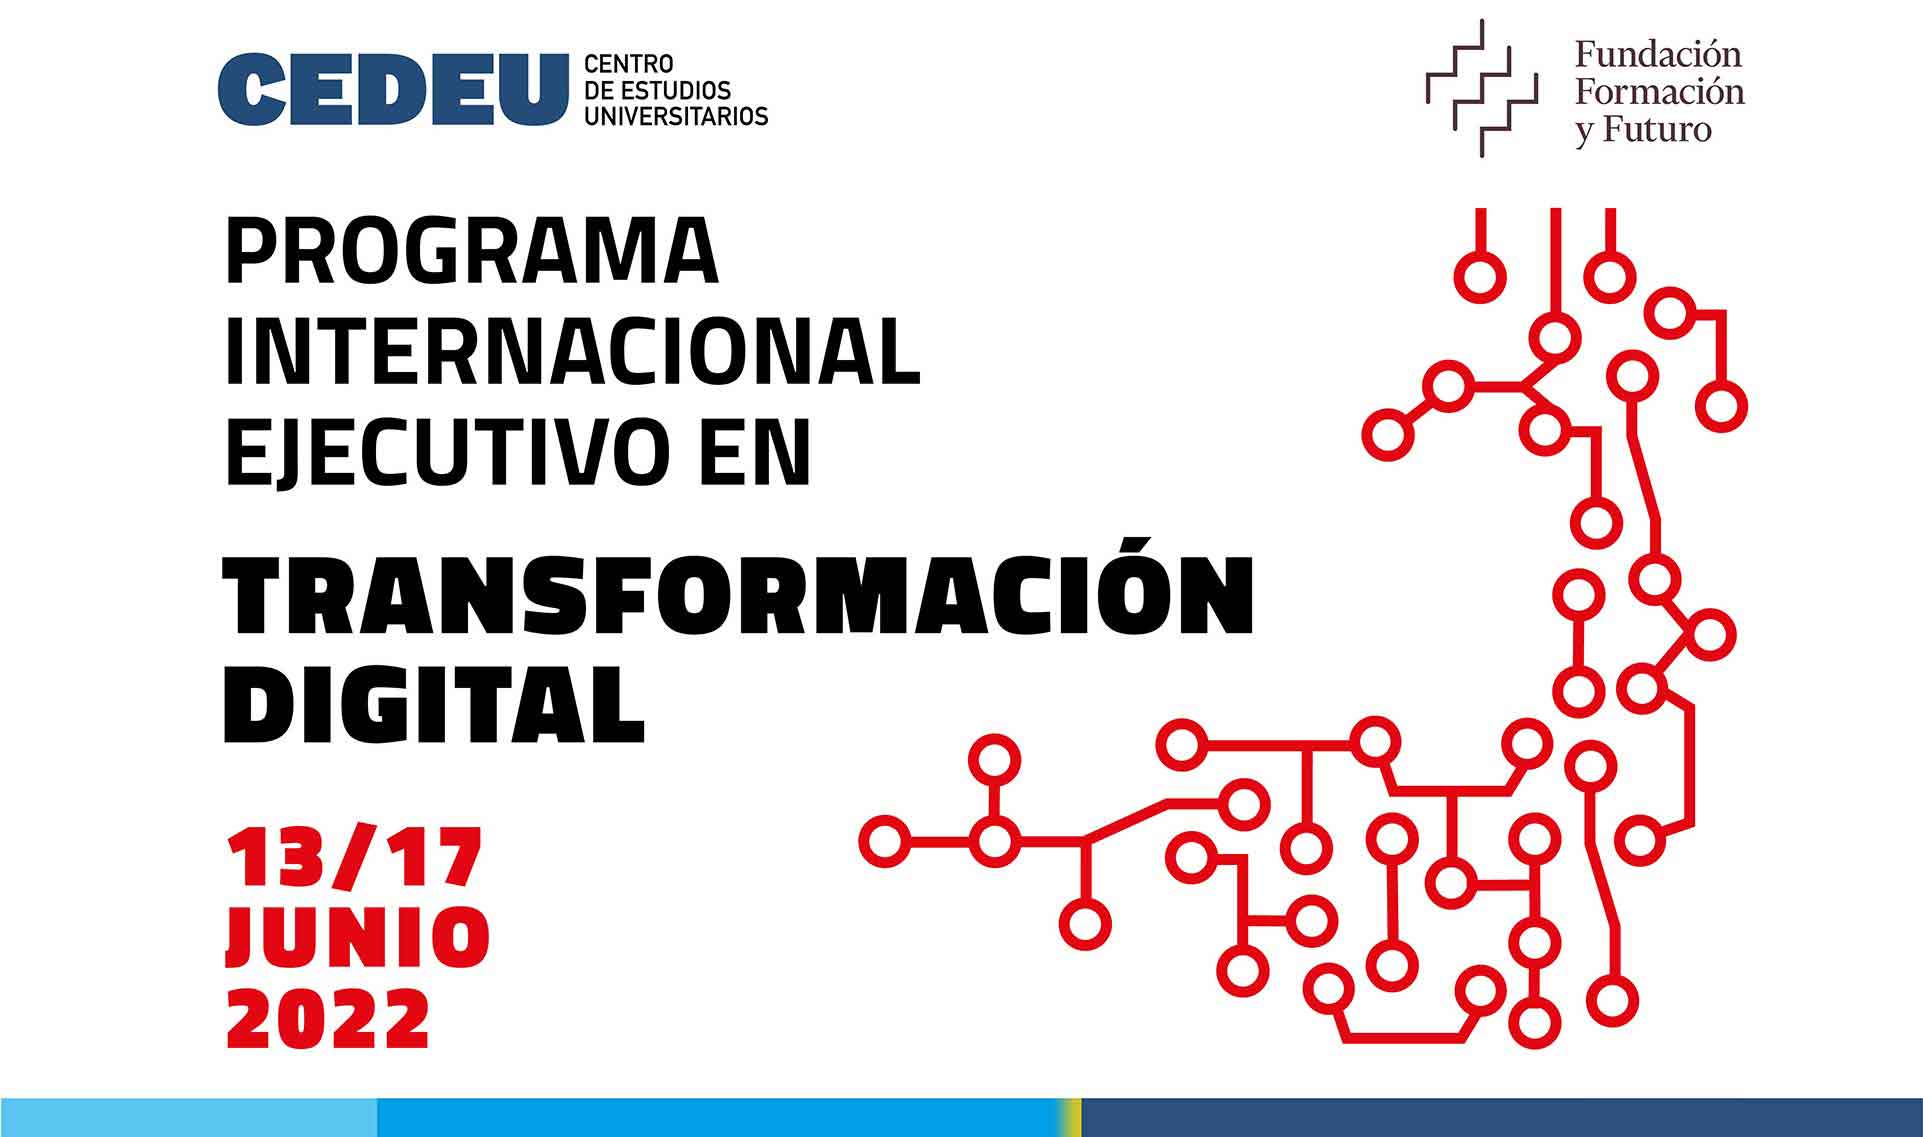 Programa Internaciona ejecutivo en transformación digital